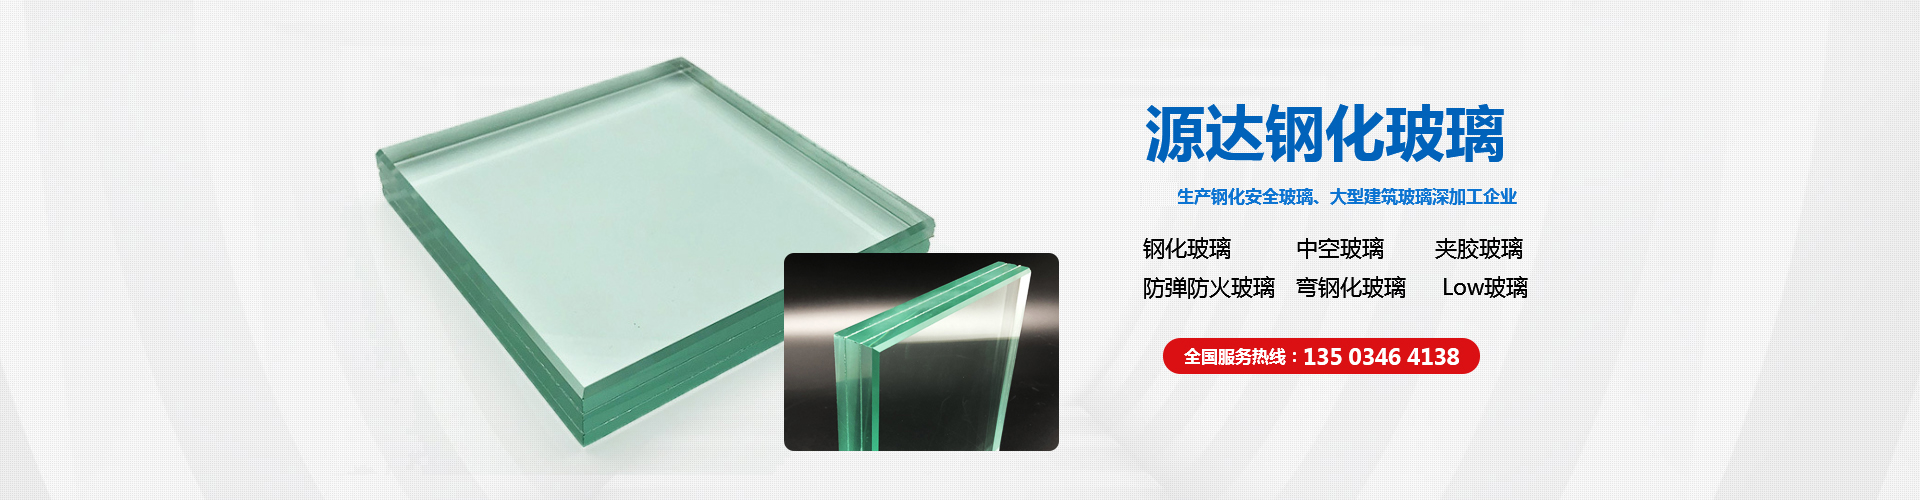 安阳市源达钢化玻璃有限公司